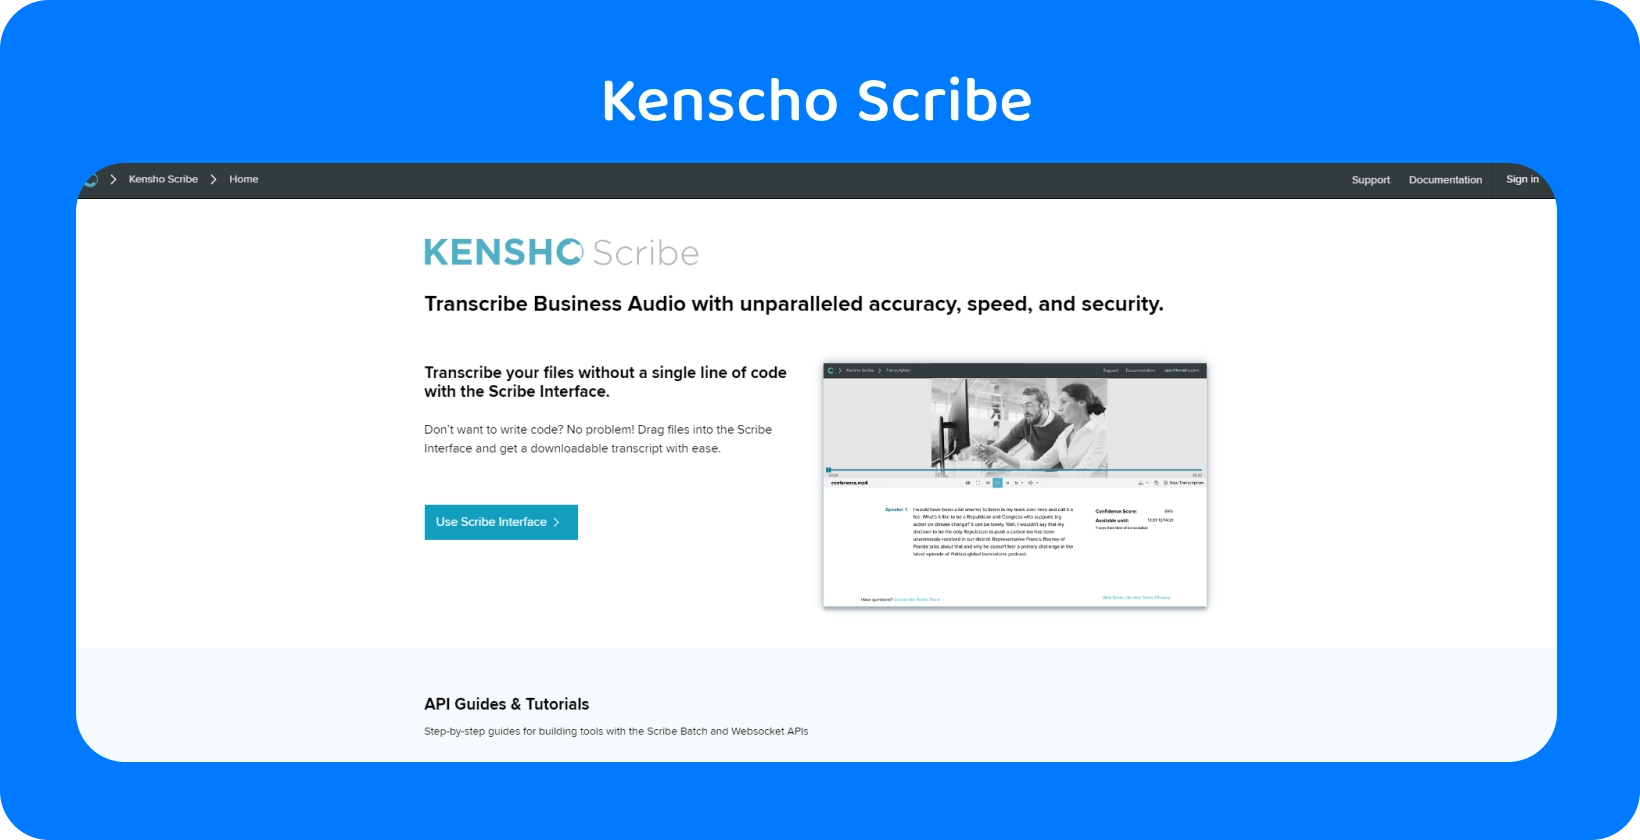 صفحة موقع Kensho على الويب تحتوي على نص "SOLUTIONS" ، تقدم أدوات AI متقدمة تكمل إملاء Word.